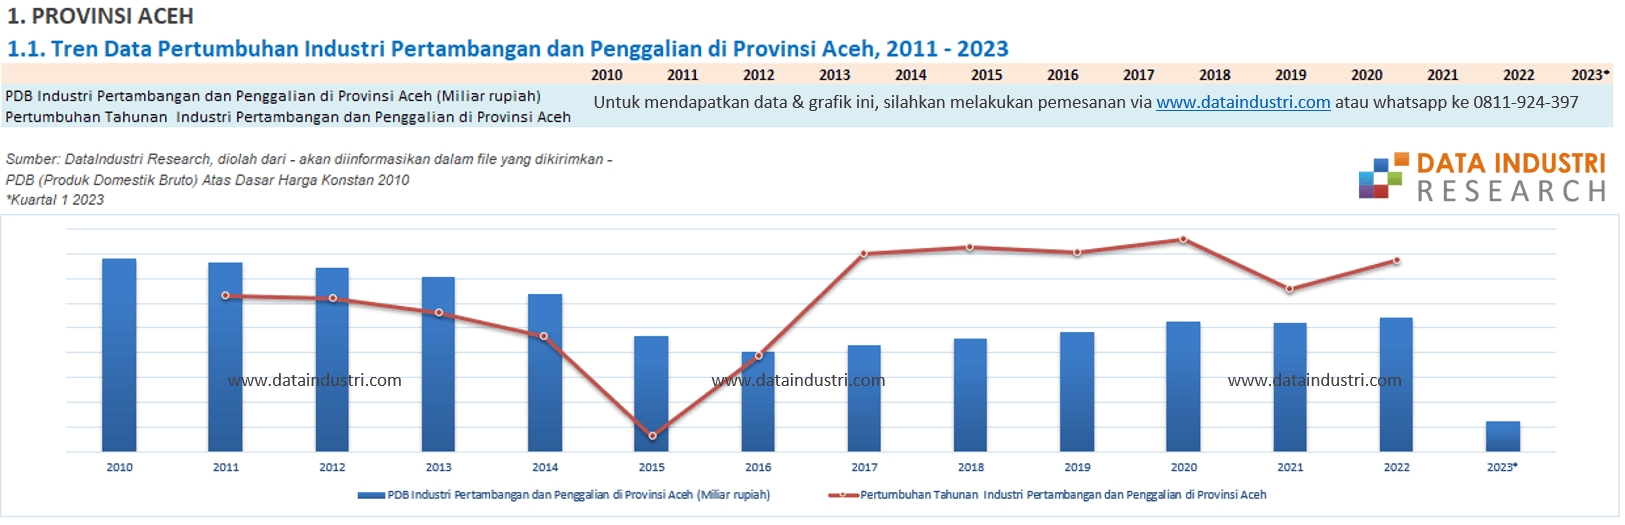 Tren Data Pertumbuhan Industri Pertambangan dan Penggalian di Provinsi Aceh, 2011 - 2023